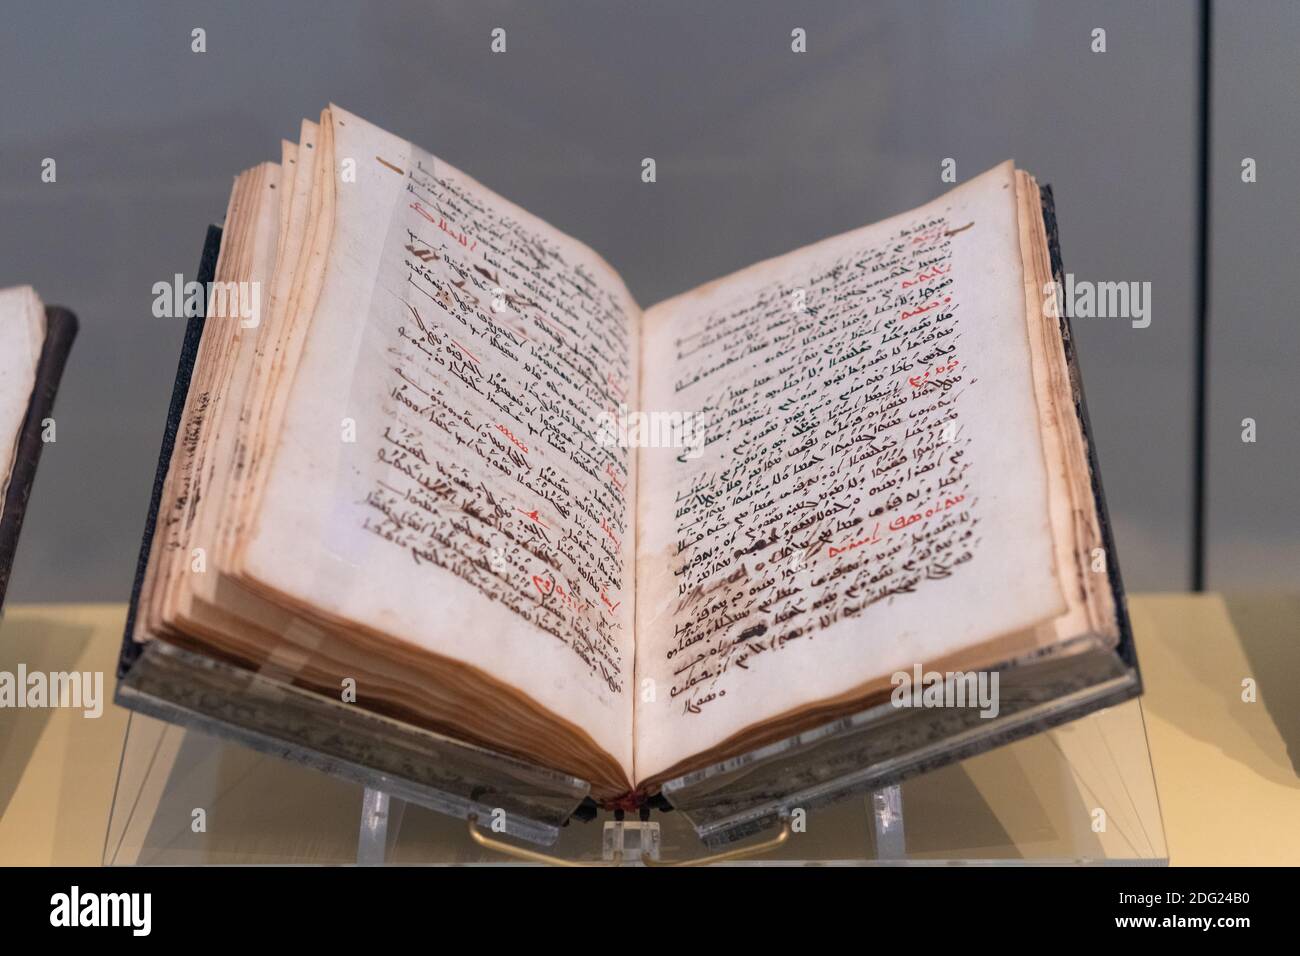 Testi biblici antichi in una mostra al Royal Ontario Museum. Il luogo è una delle principali attrazioni turistiche. Foto Stock